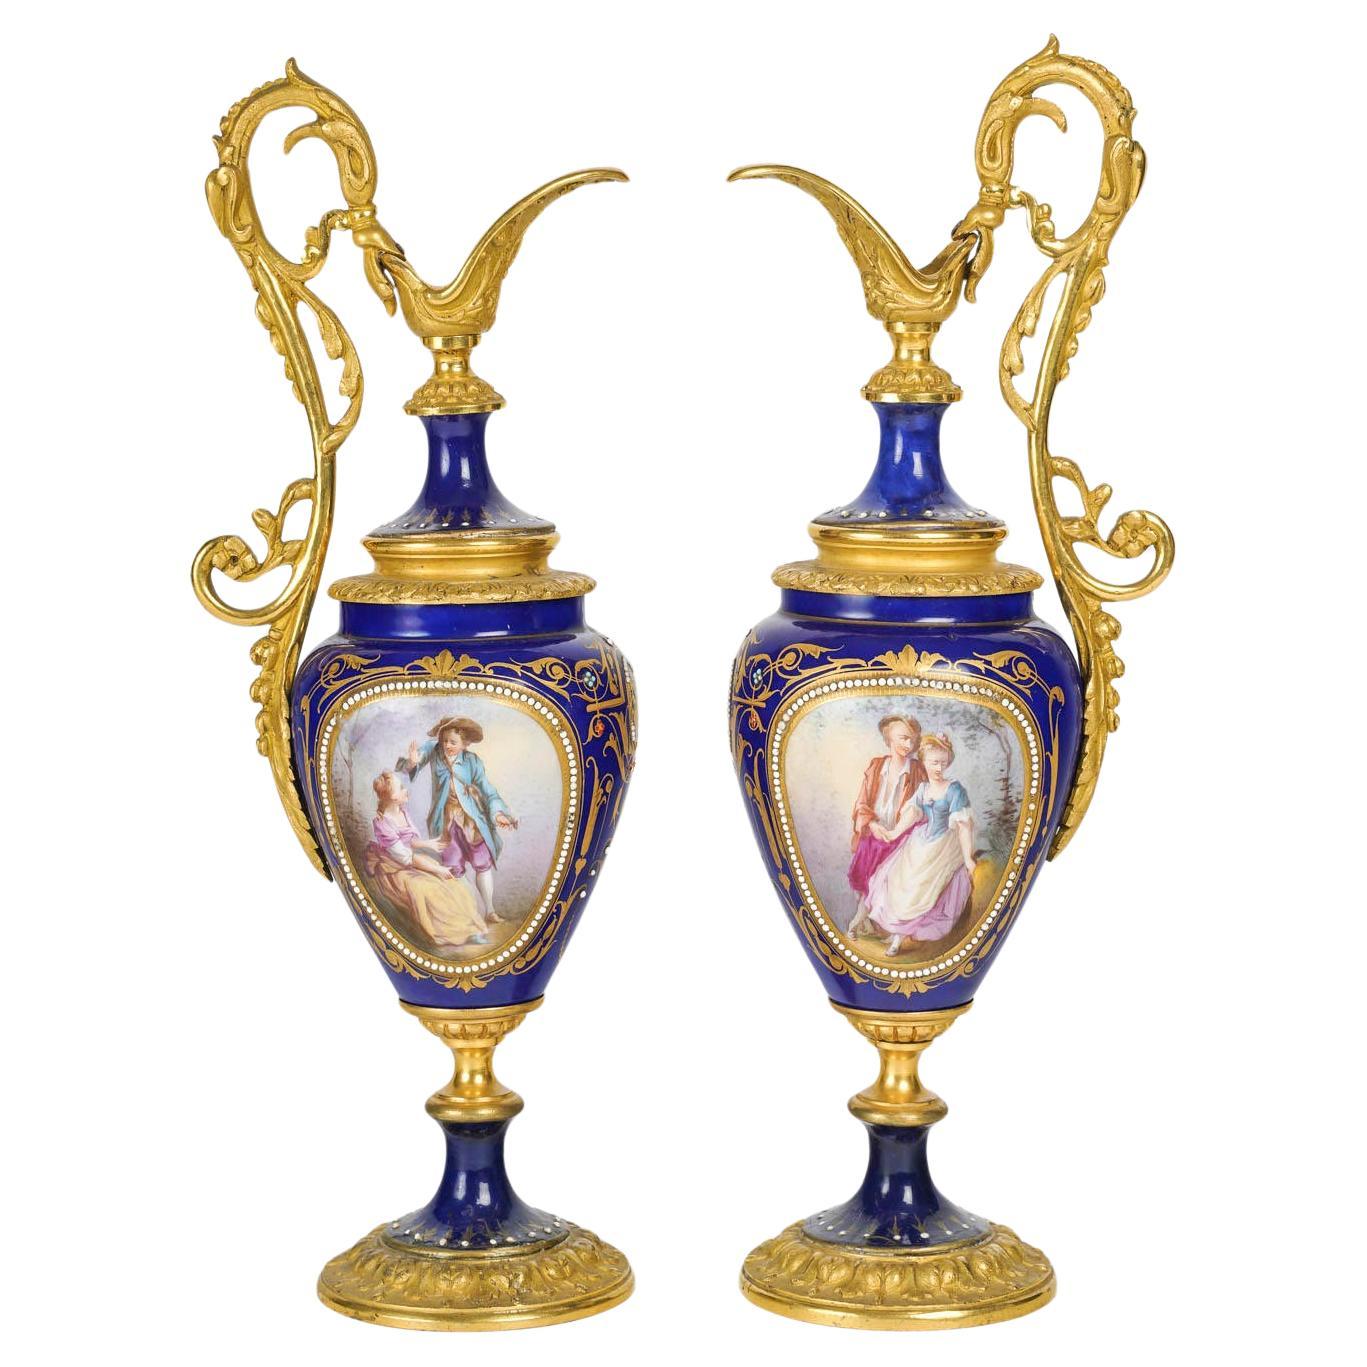 Paire d'aiguières en bronze doré et en porcelaine bleu roi, XIXe siècle, Napoléon III